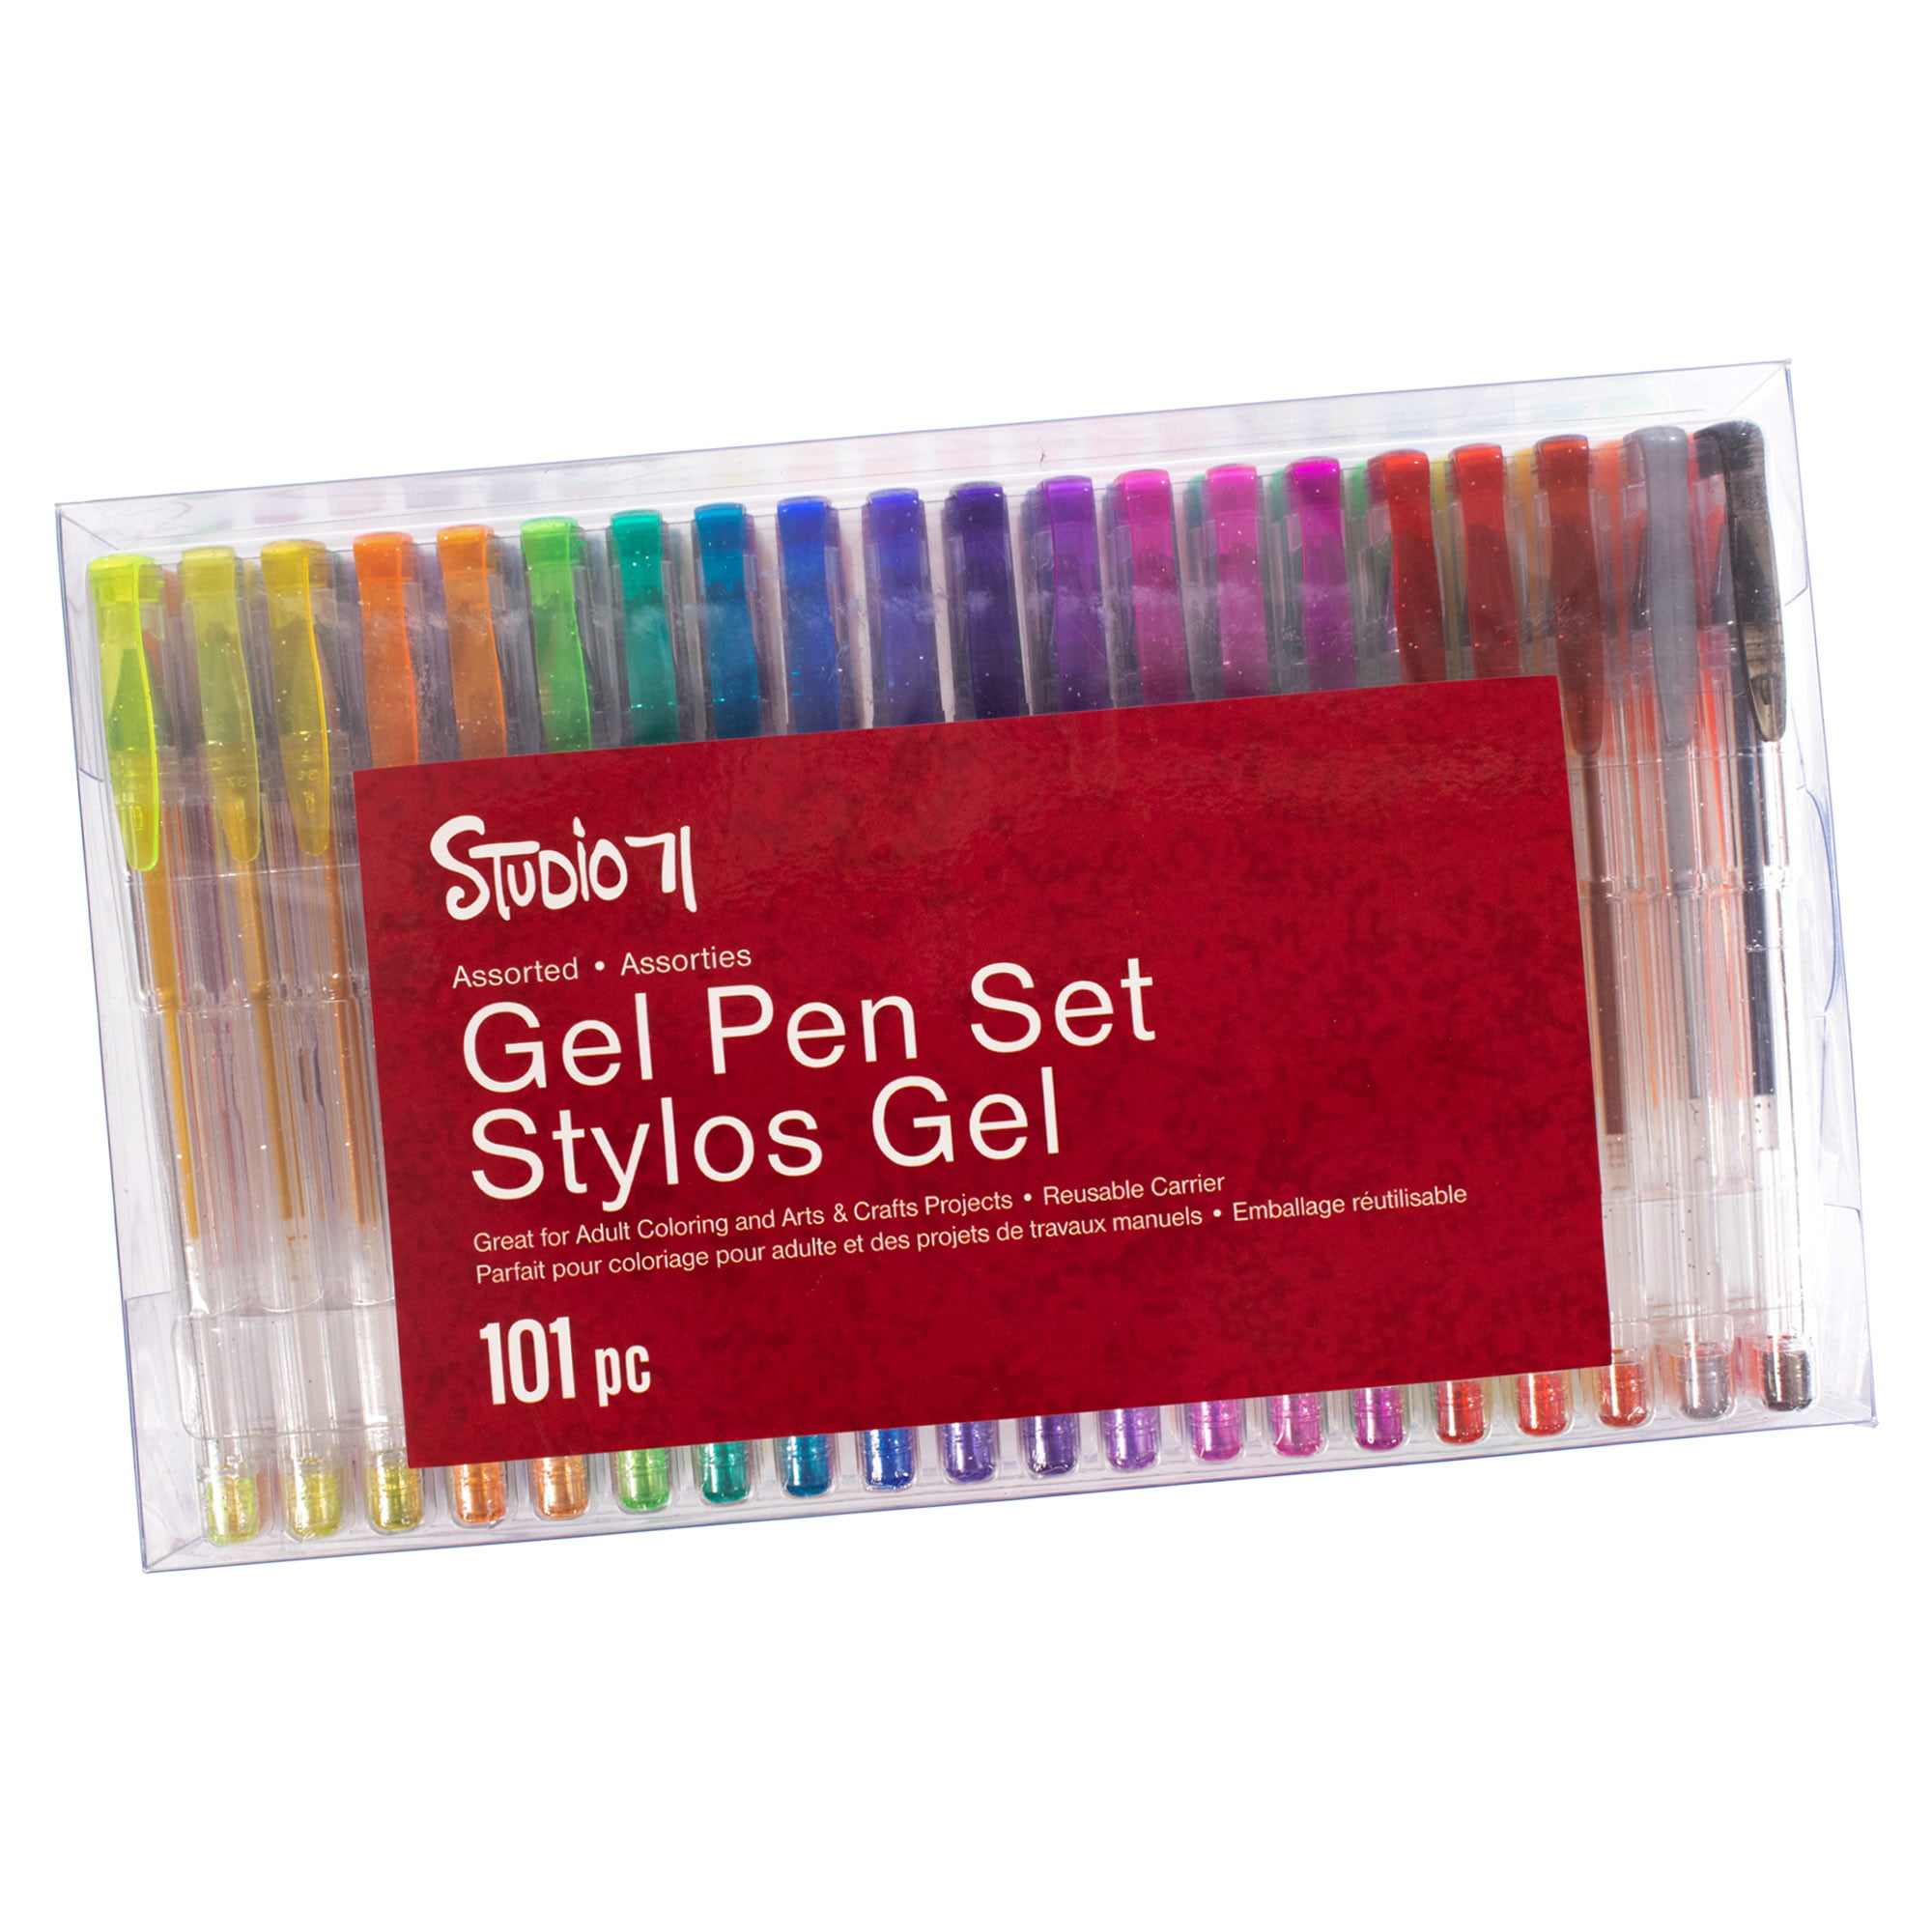 Neon Day Of The Week Glitter Pen - Epoxy Pens